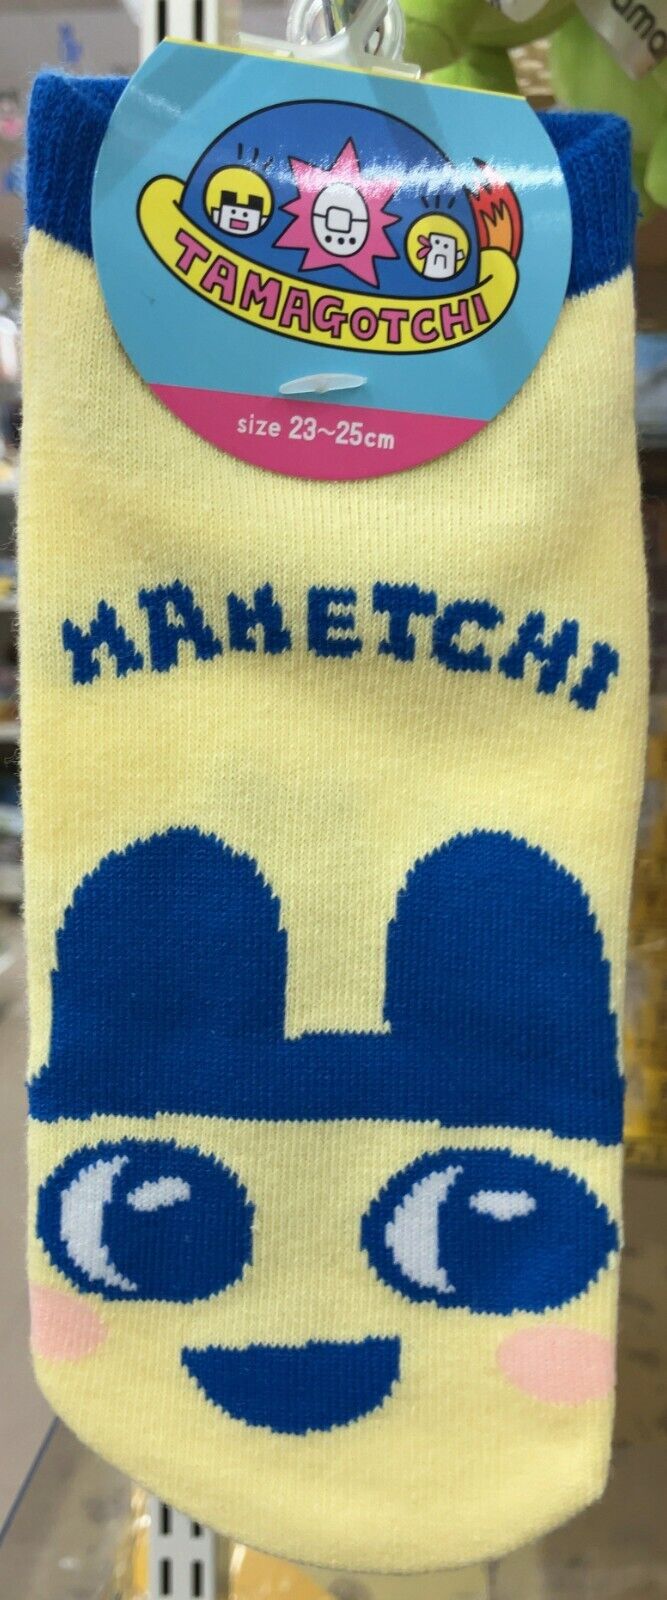 Tamagotchi Ladies Socks 23-25cm Mamechi Game Character New Japan